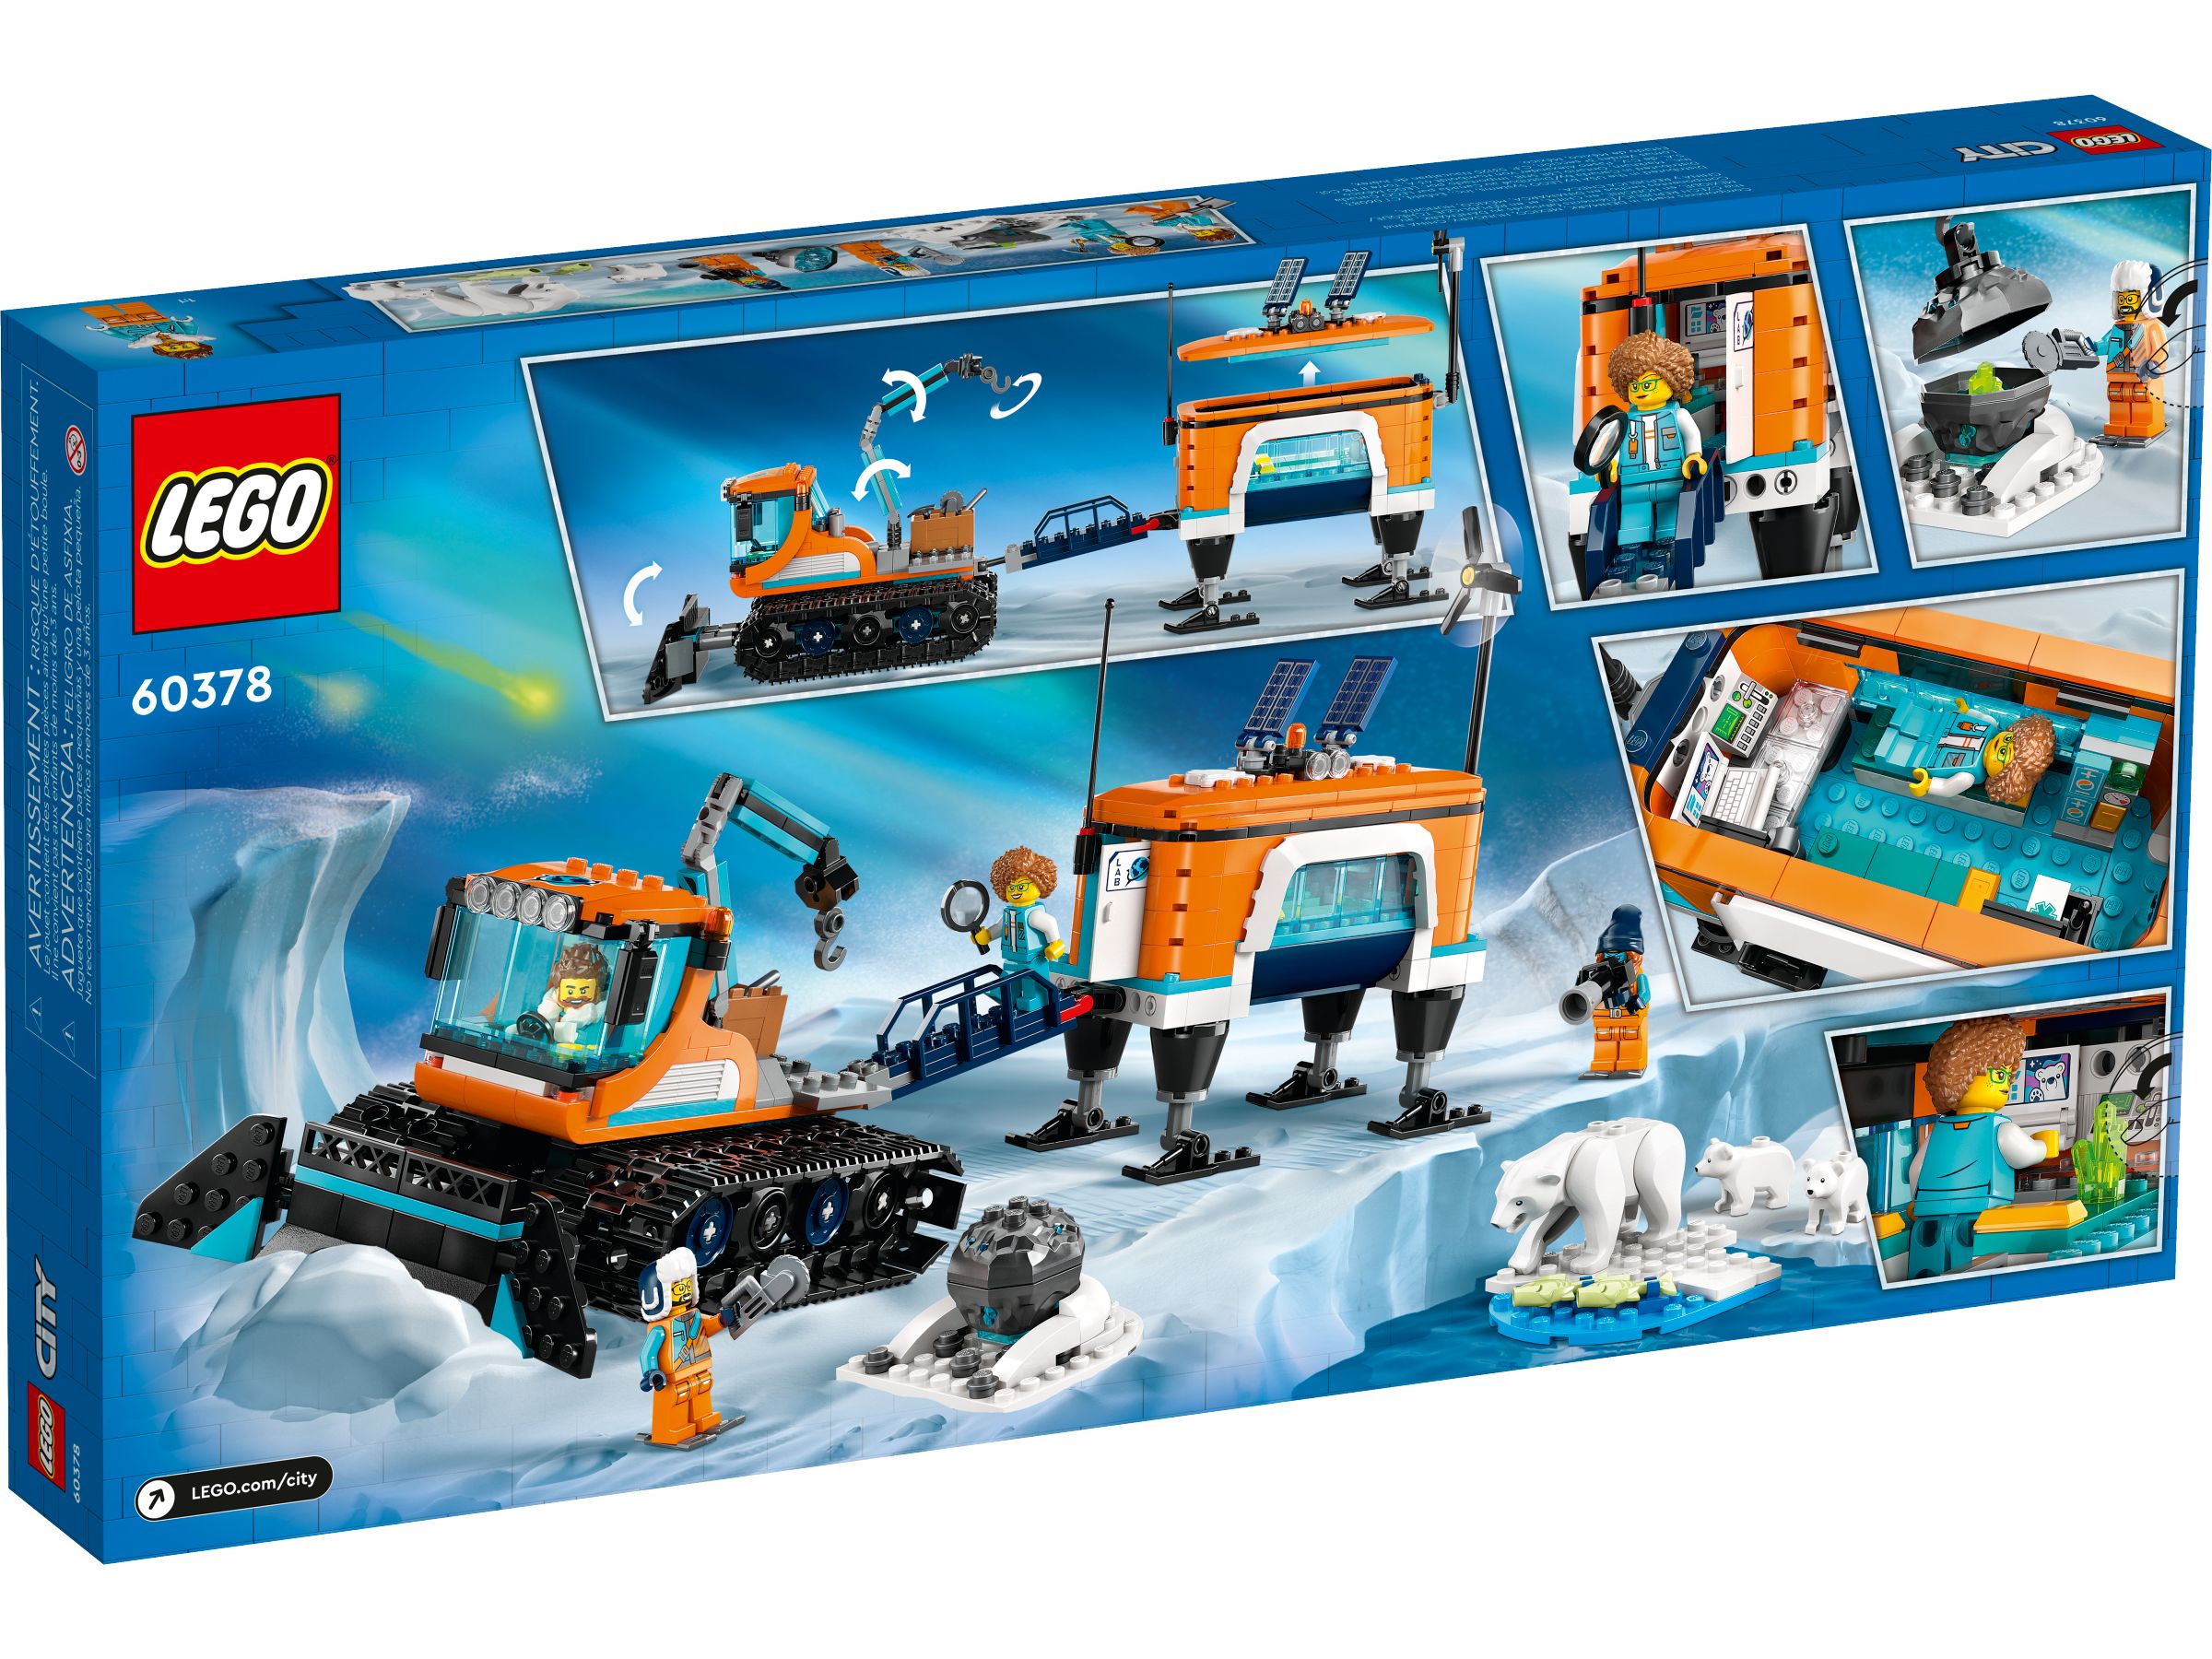 LEGO City 60378 Arktis-Schneepflug mit mobilem Labor LEGO_60378_Box5_v39.jpg